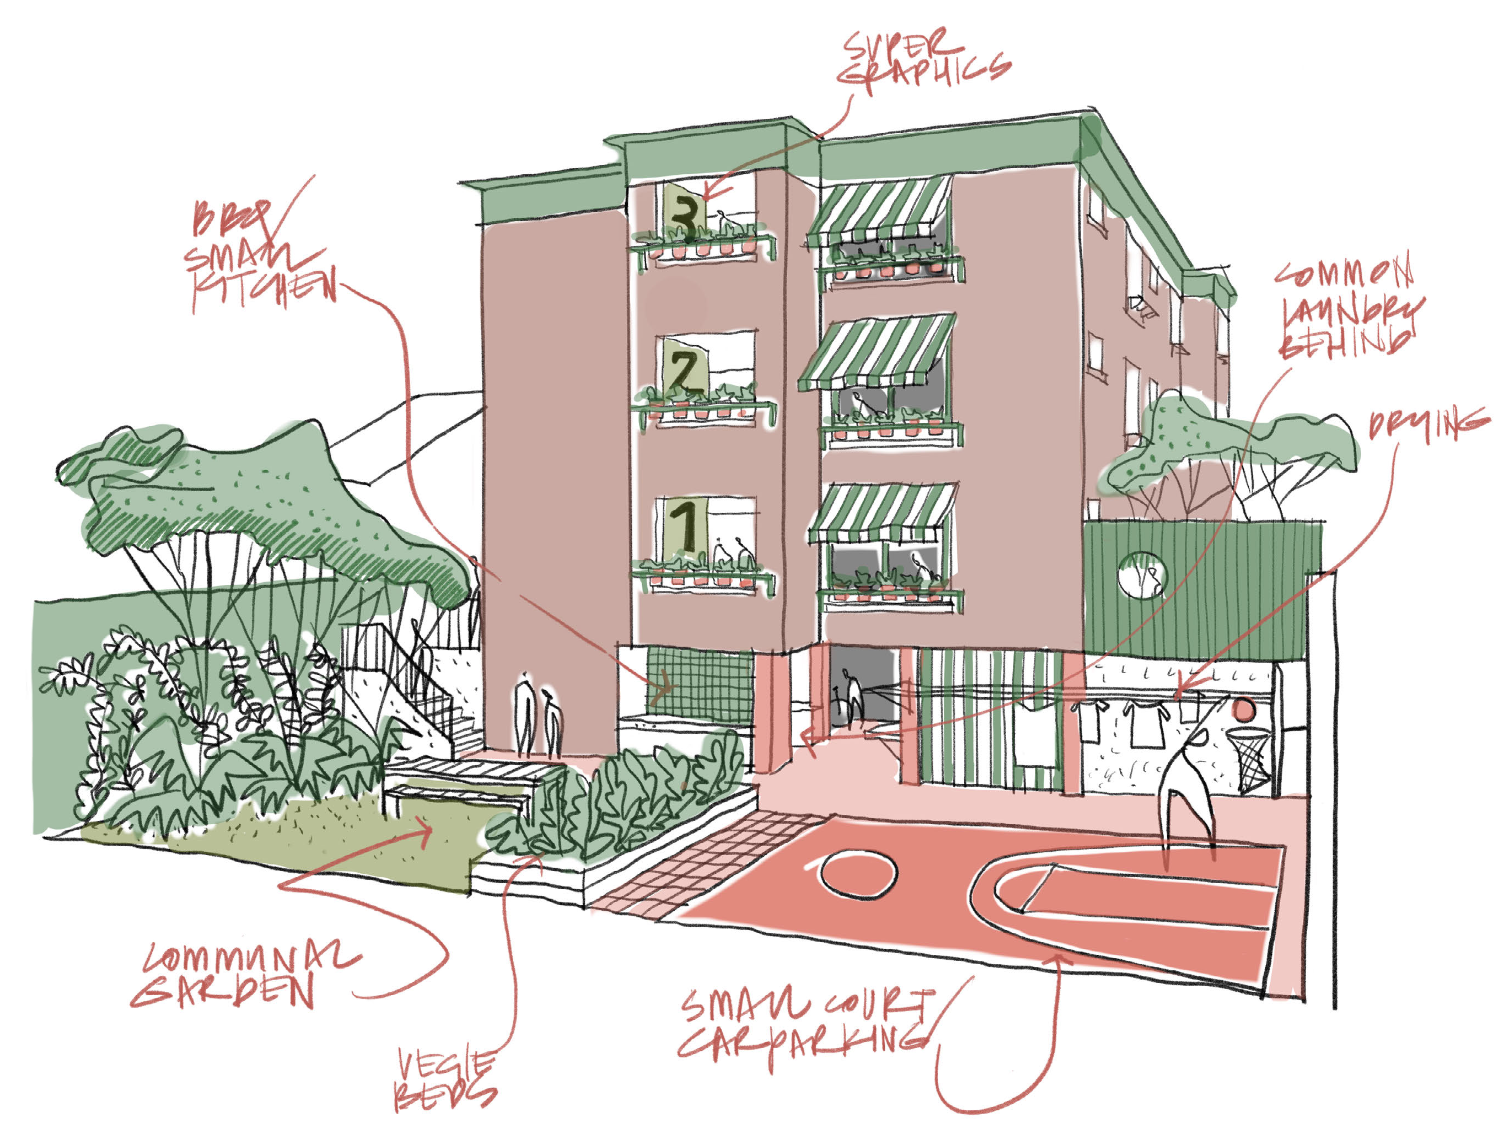 Illustrated diagram of the retro-fit apartment building.